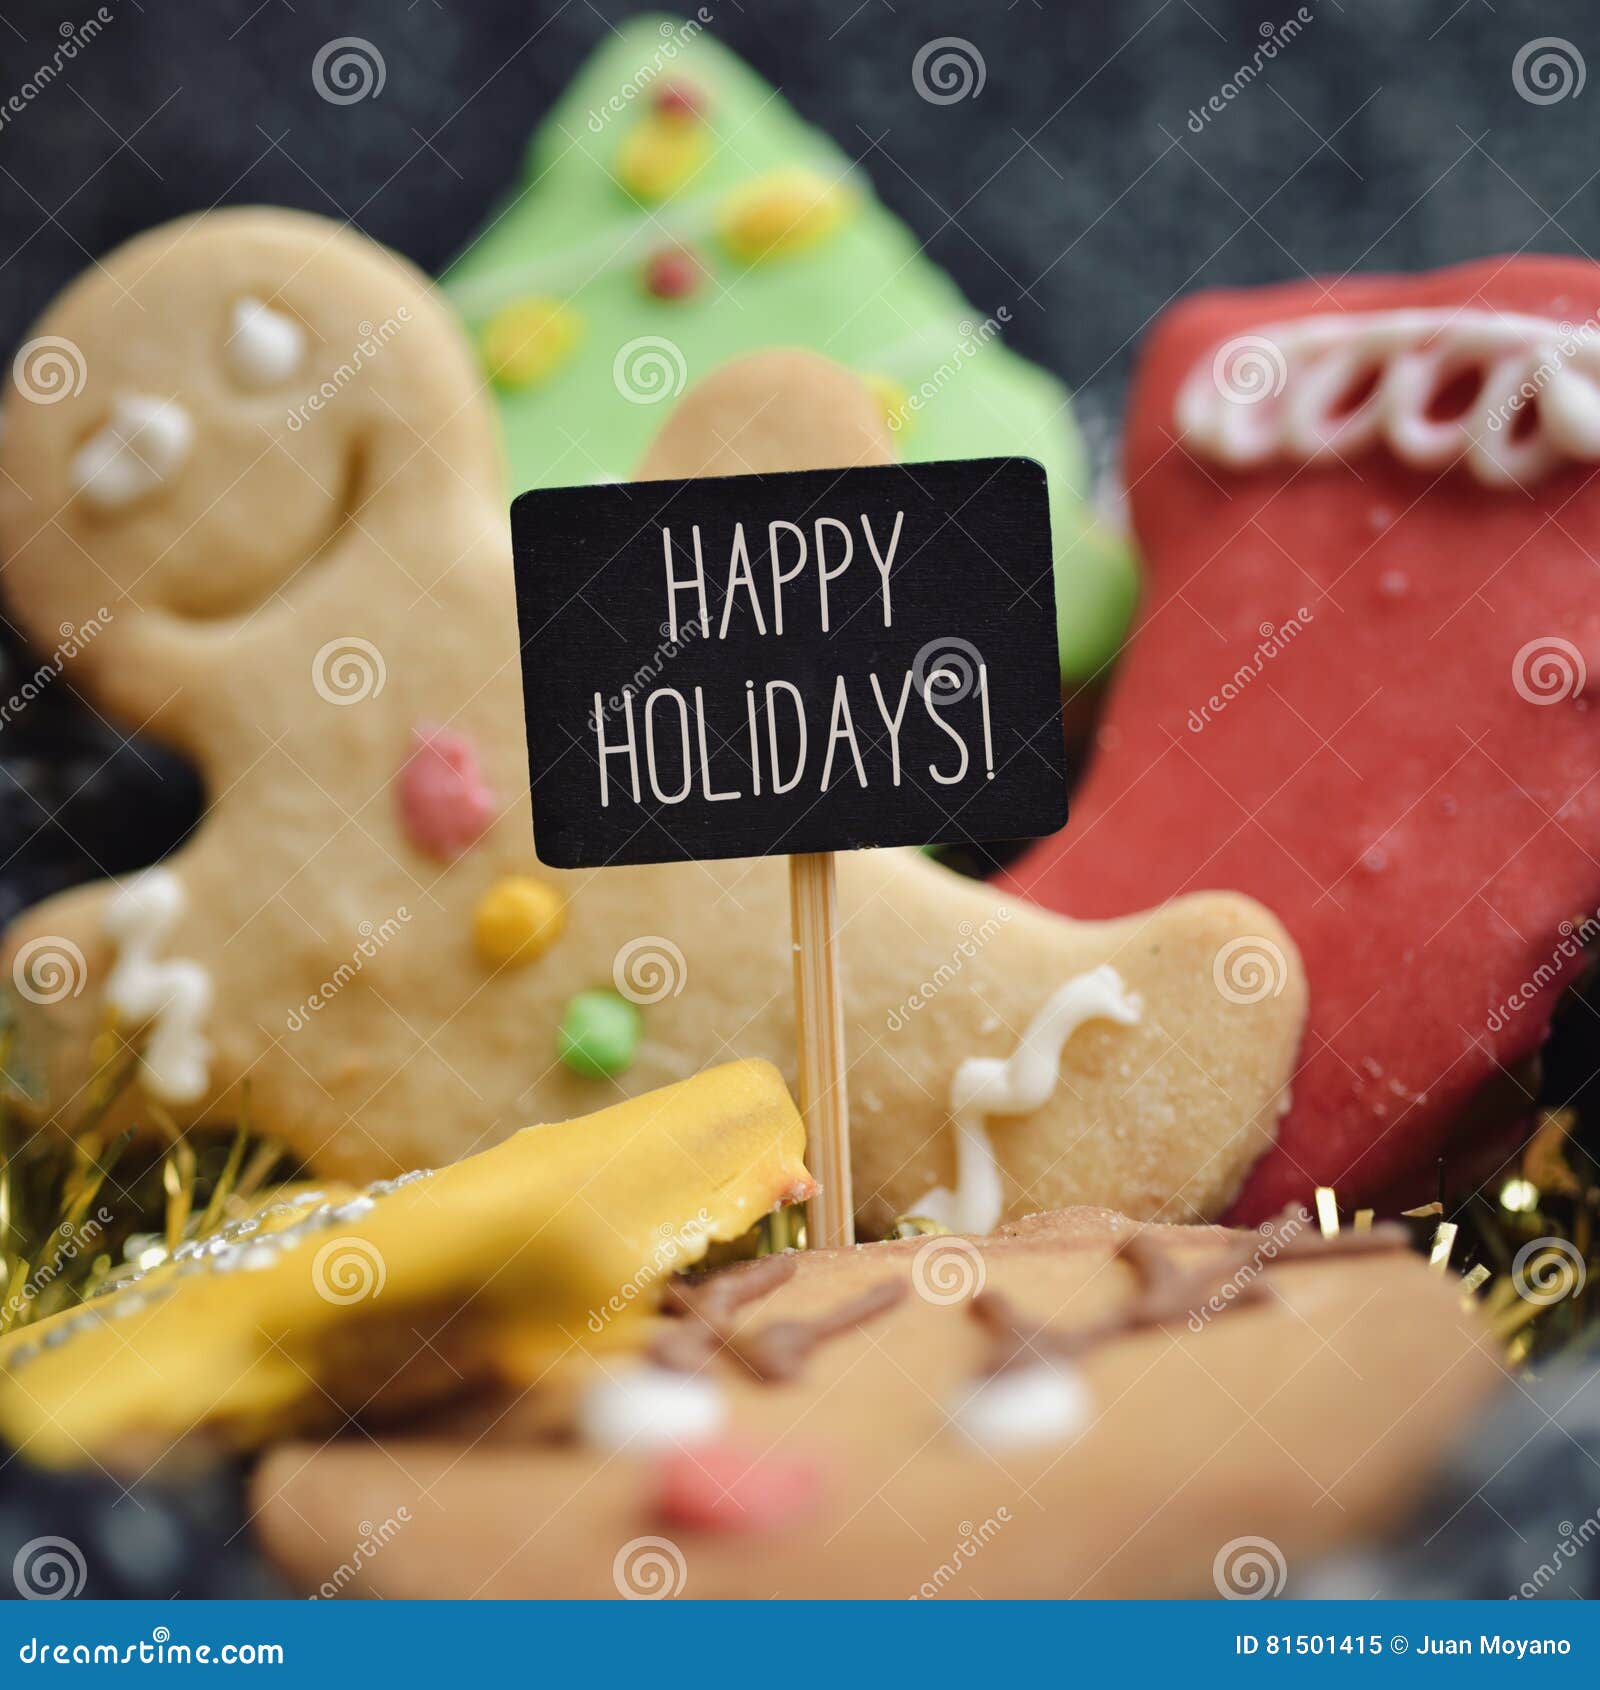 Cookies e texto do Natal boas festas. Close up de uma pilha de cookies do Natal com formas e cores diferentes e um quadro indicador preto com o texto boas festas escrito nele